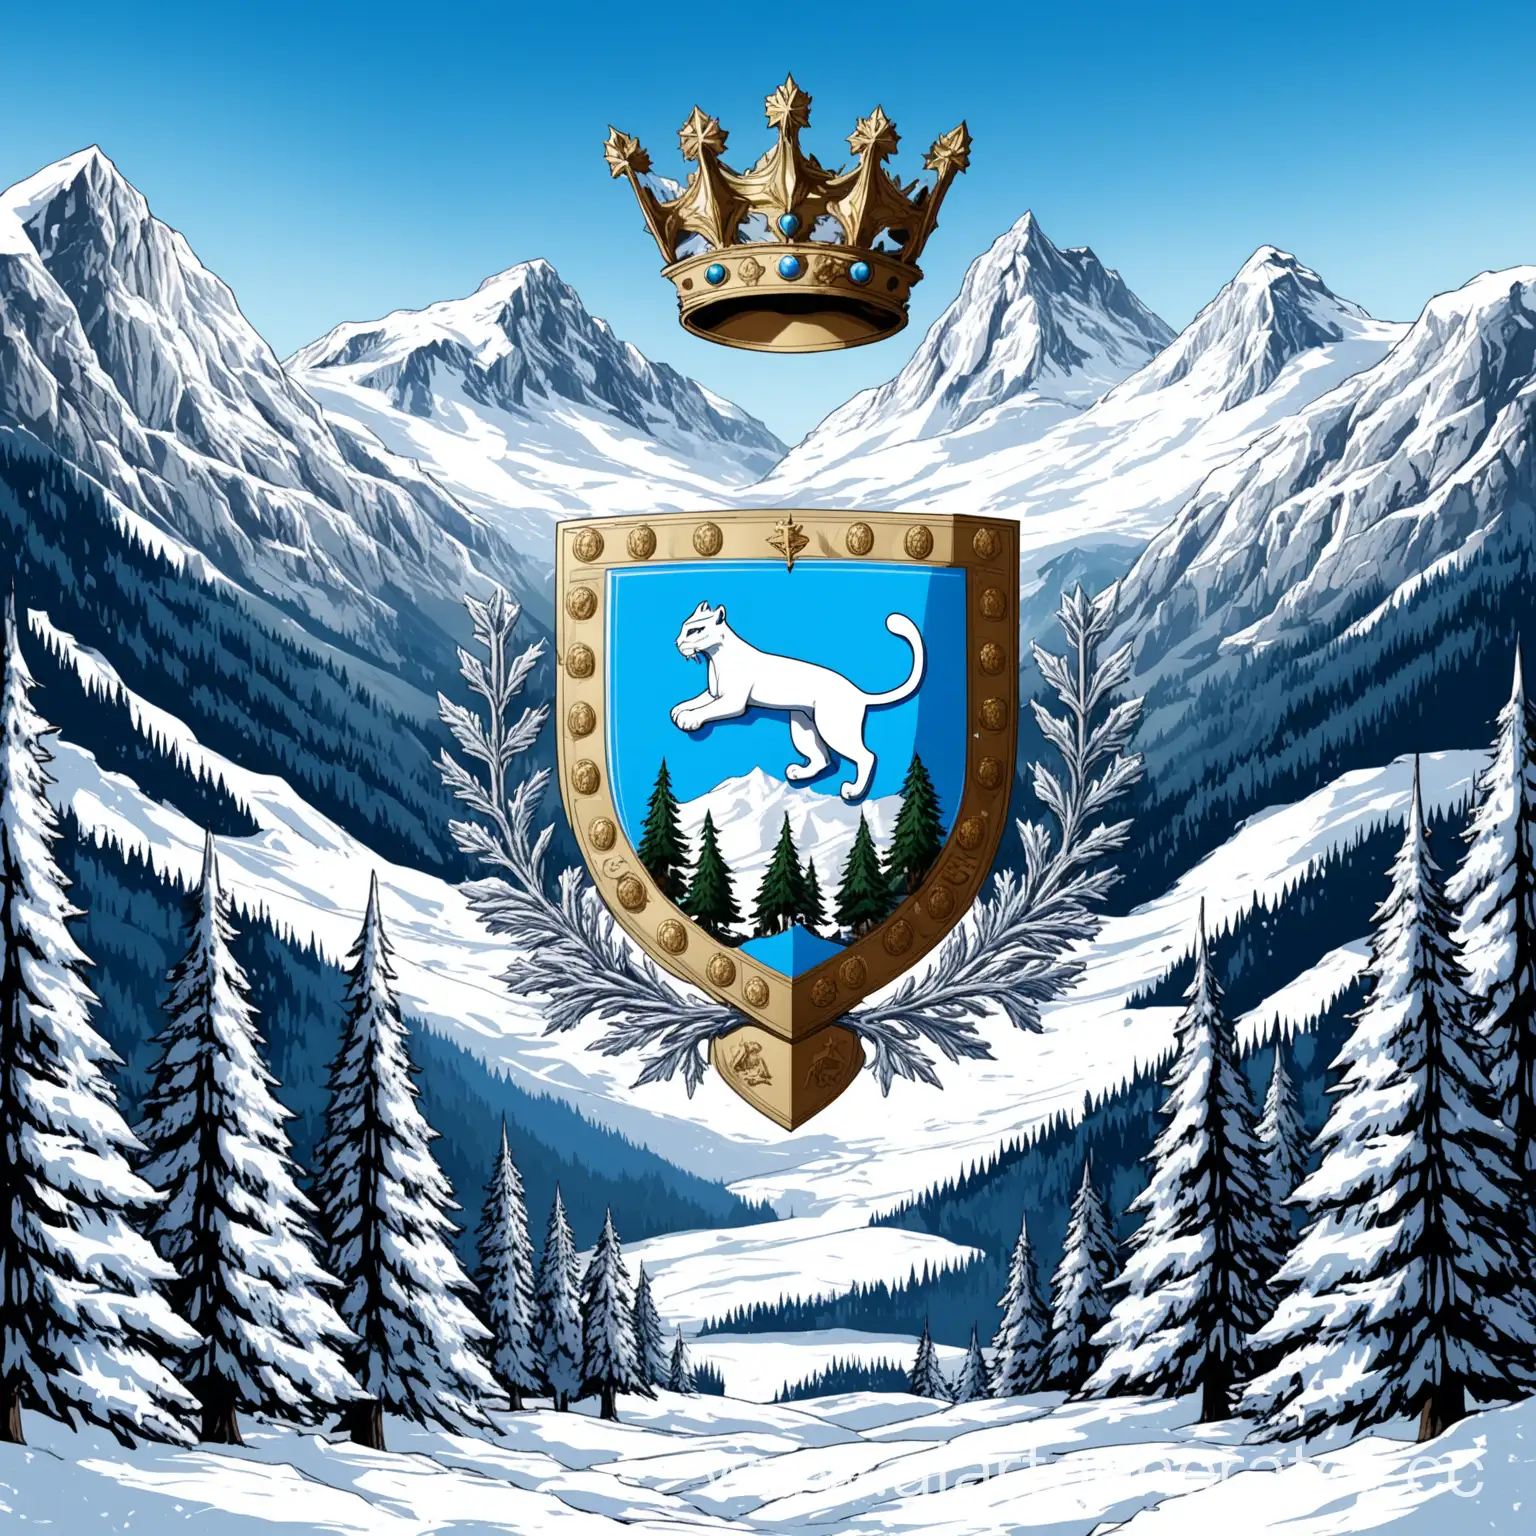 Герб  фэнтези страны, большие горы, елки, снег, серебро, синий, голубой, белый, глаза пумы